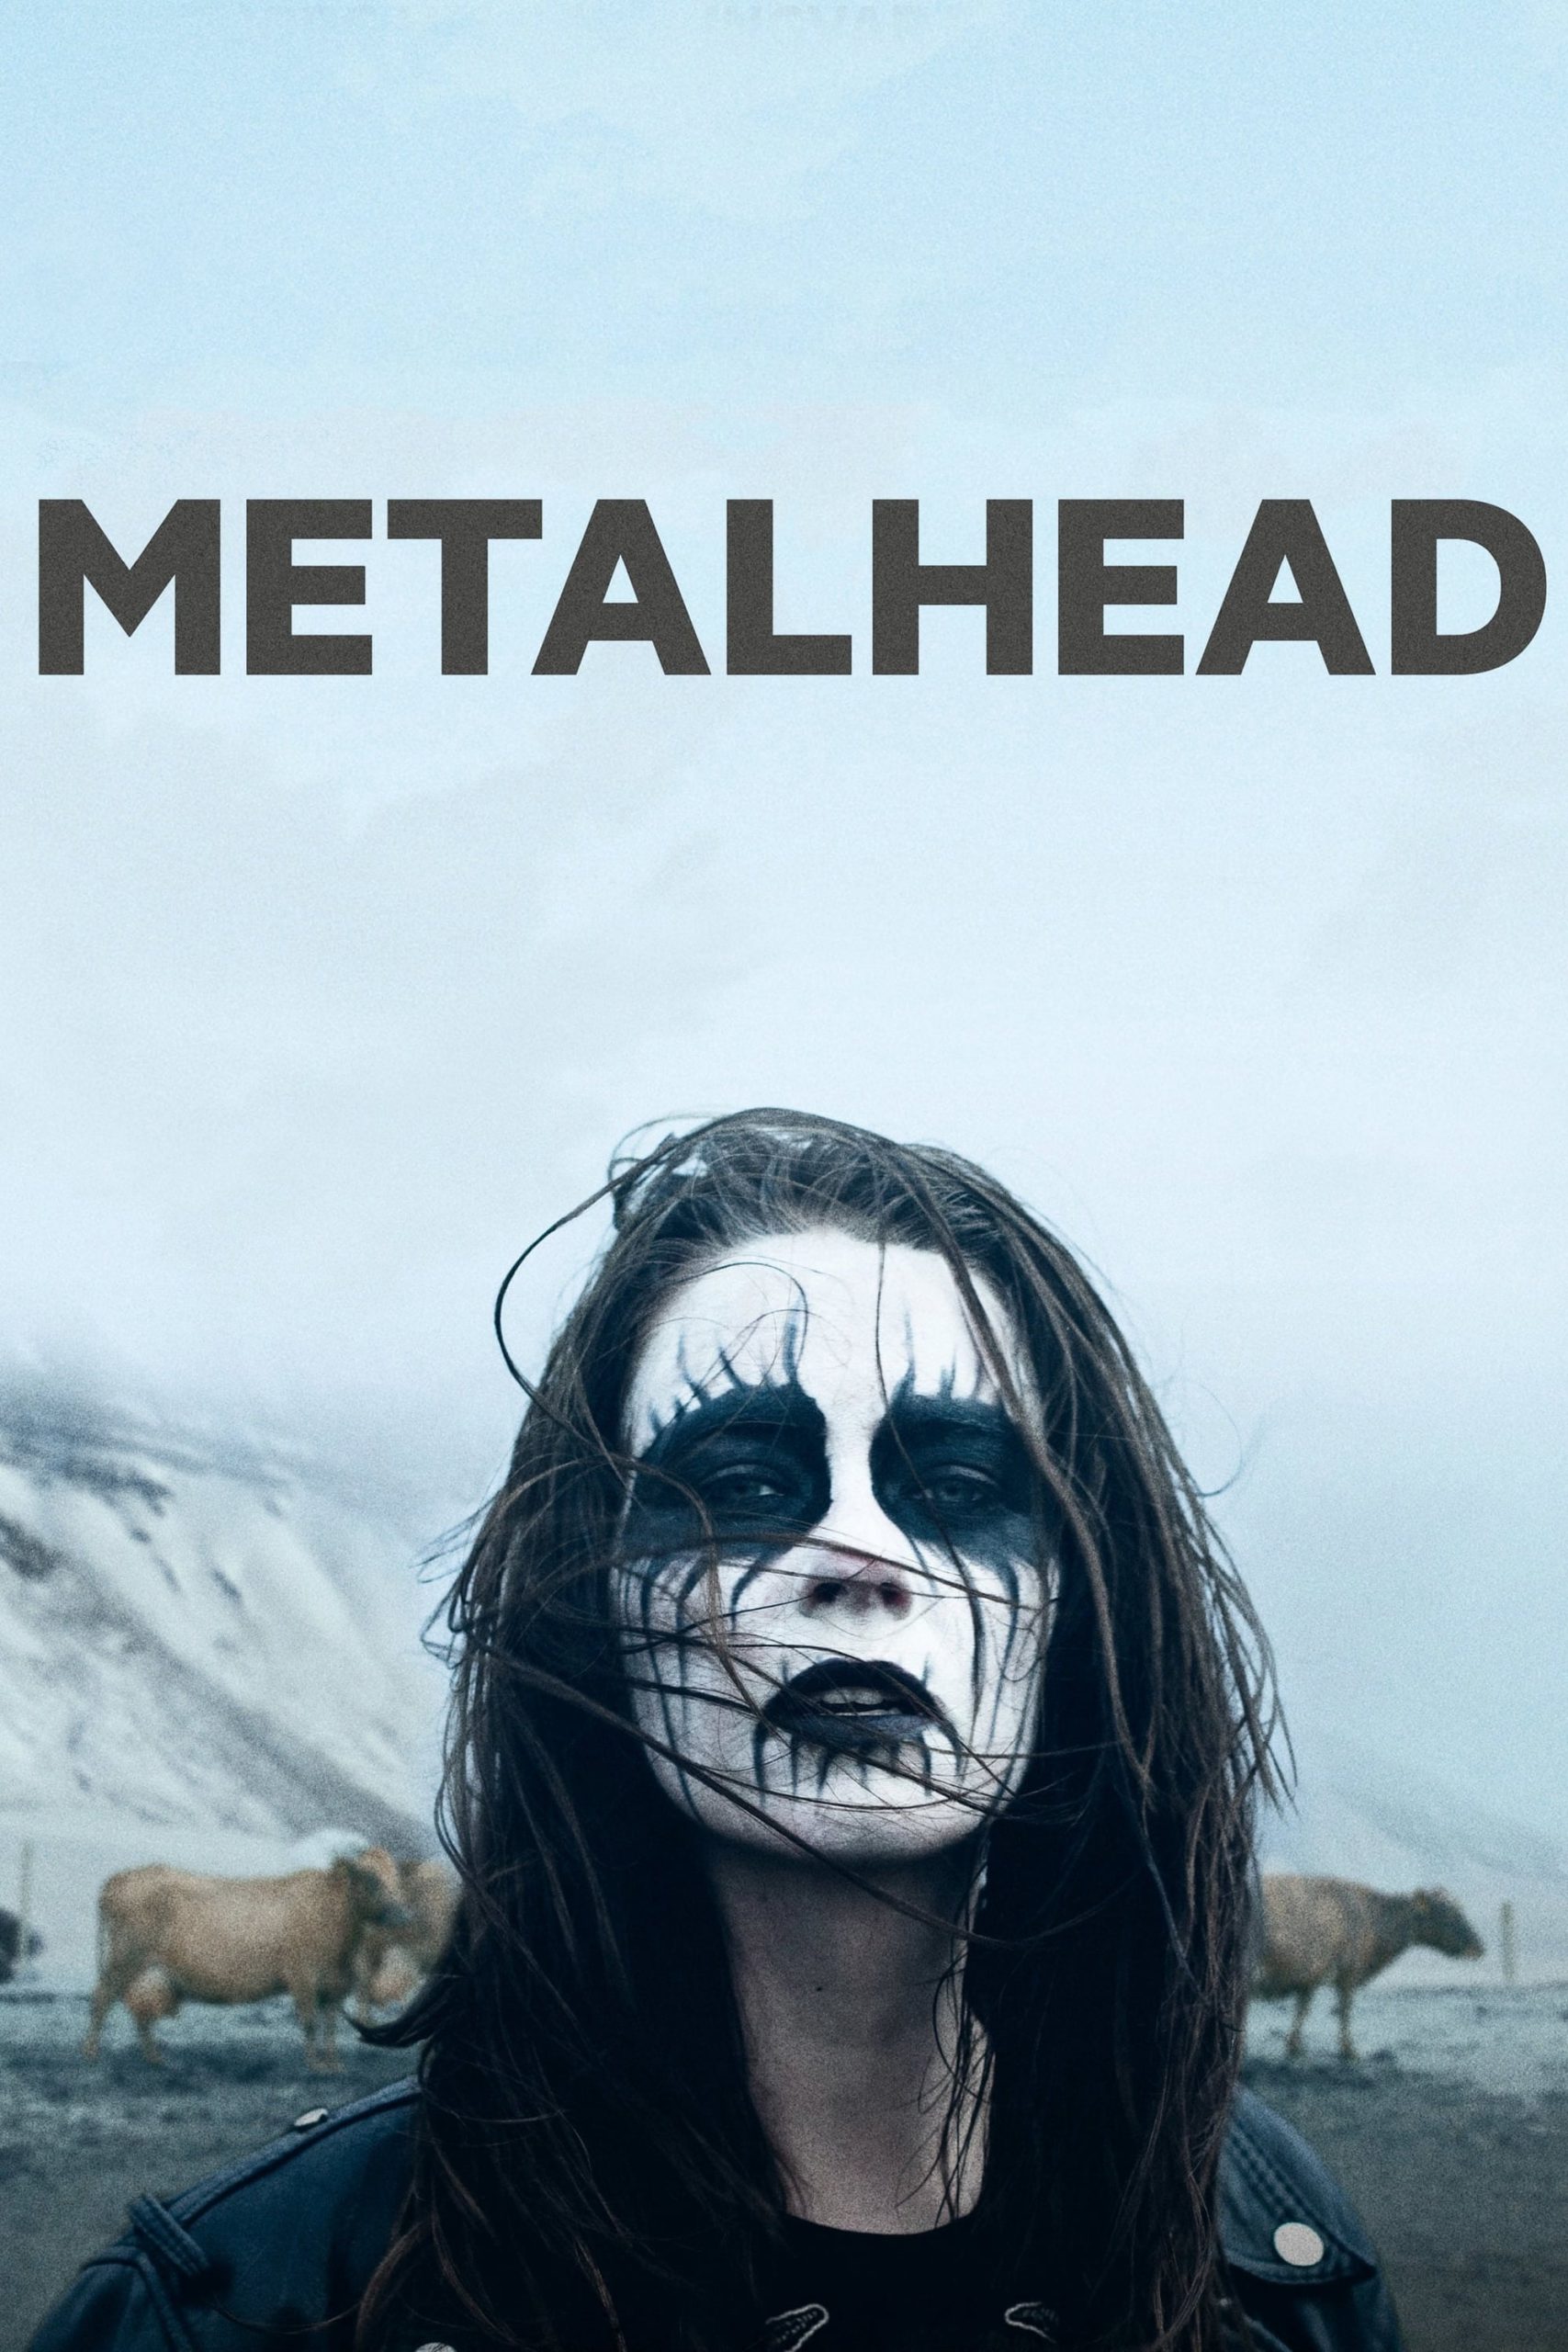 Metalhead [Sub-ITA] (2013)